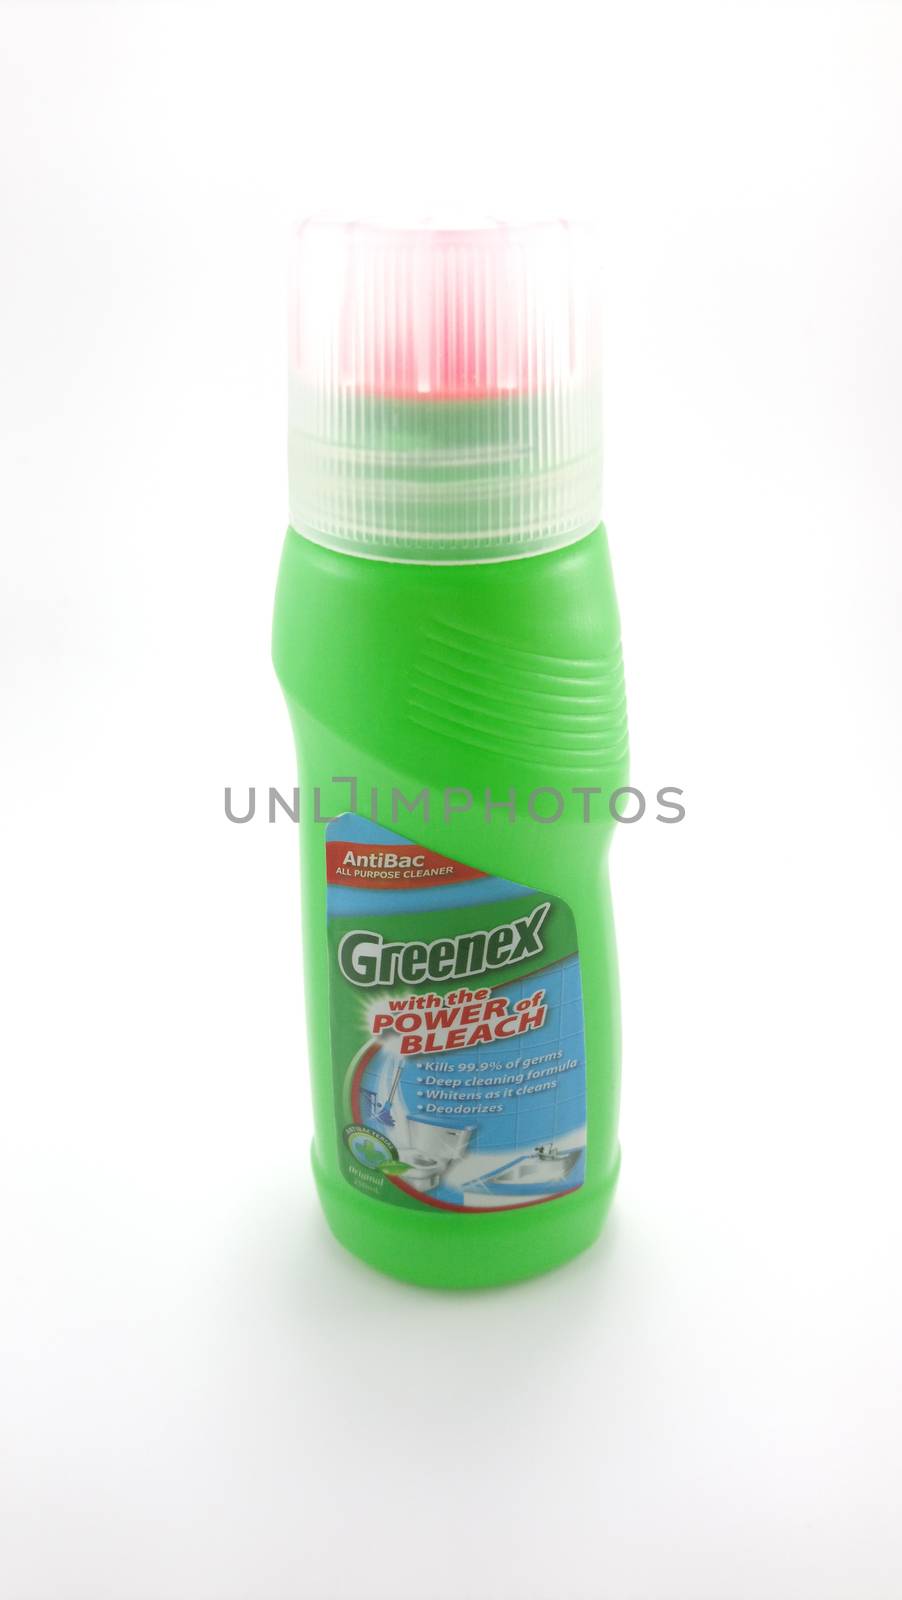 MANILA, PH - JUNE 23 - Greenex all purpose cleaner on June 23, 2020 in Manila, Philippines.